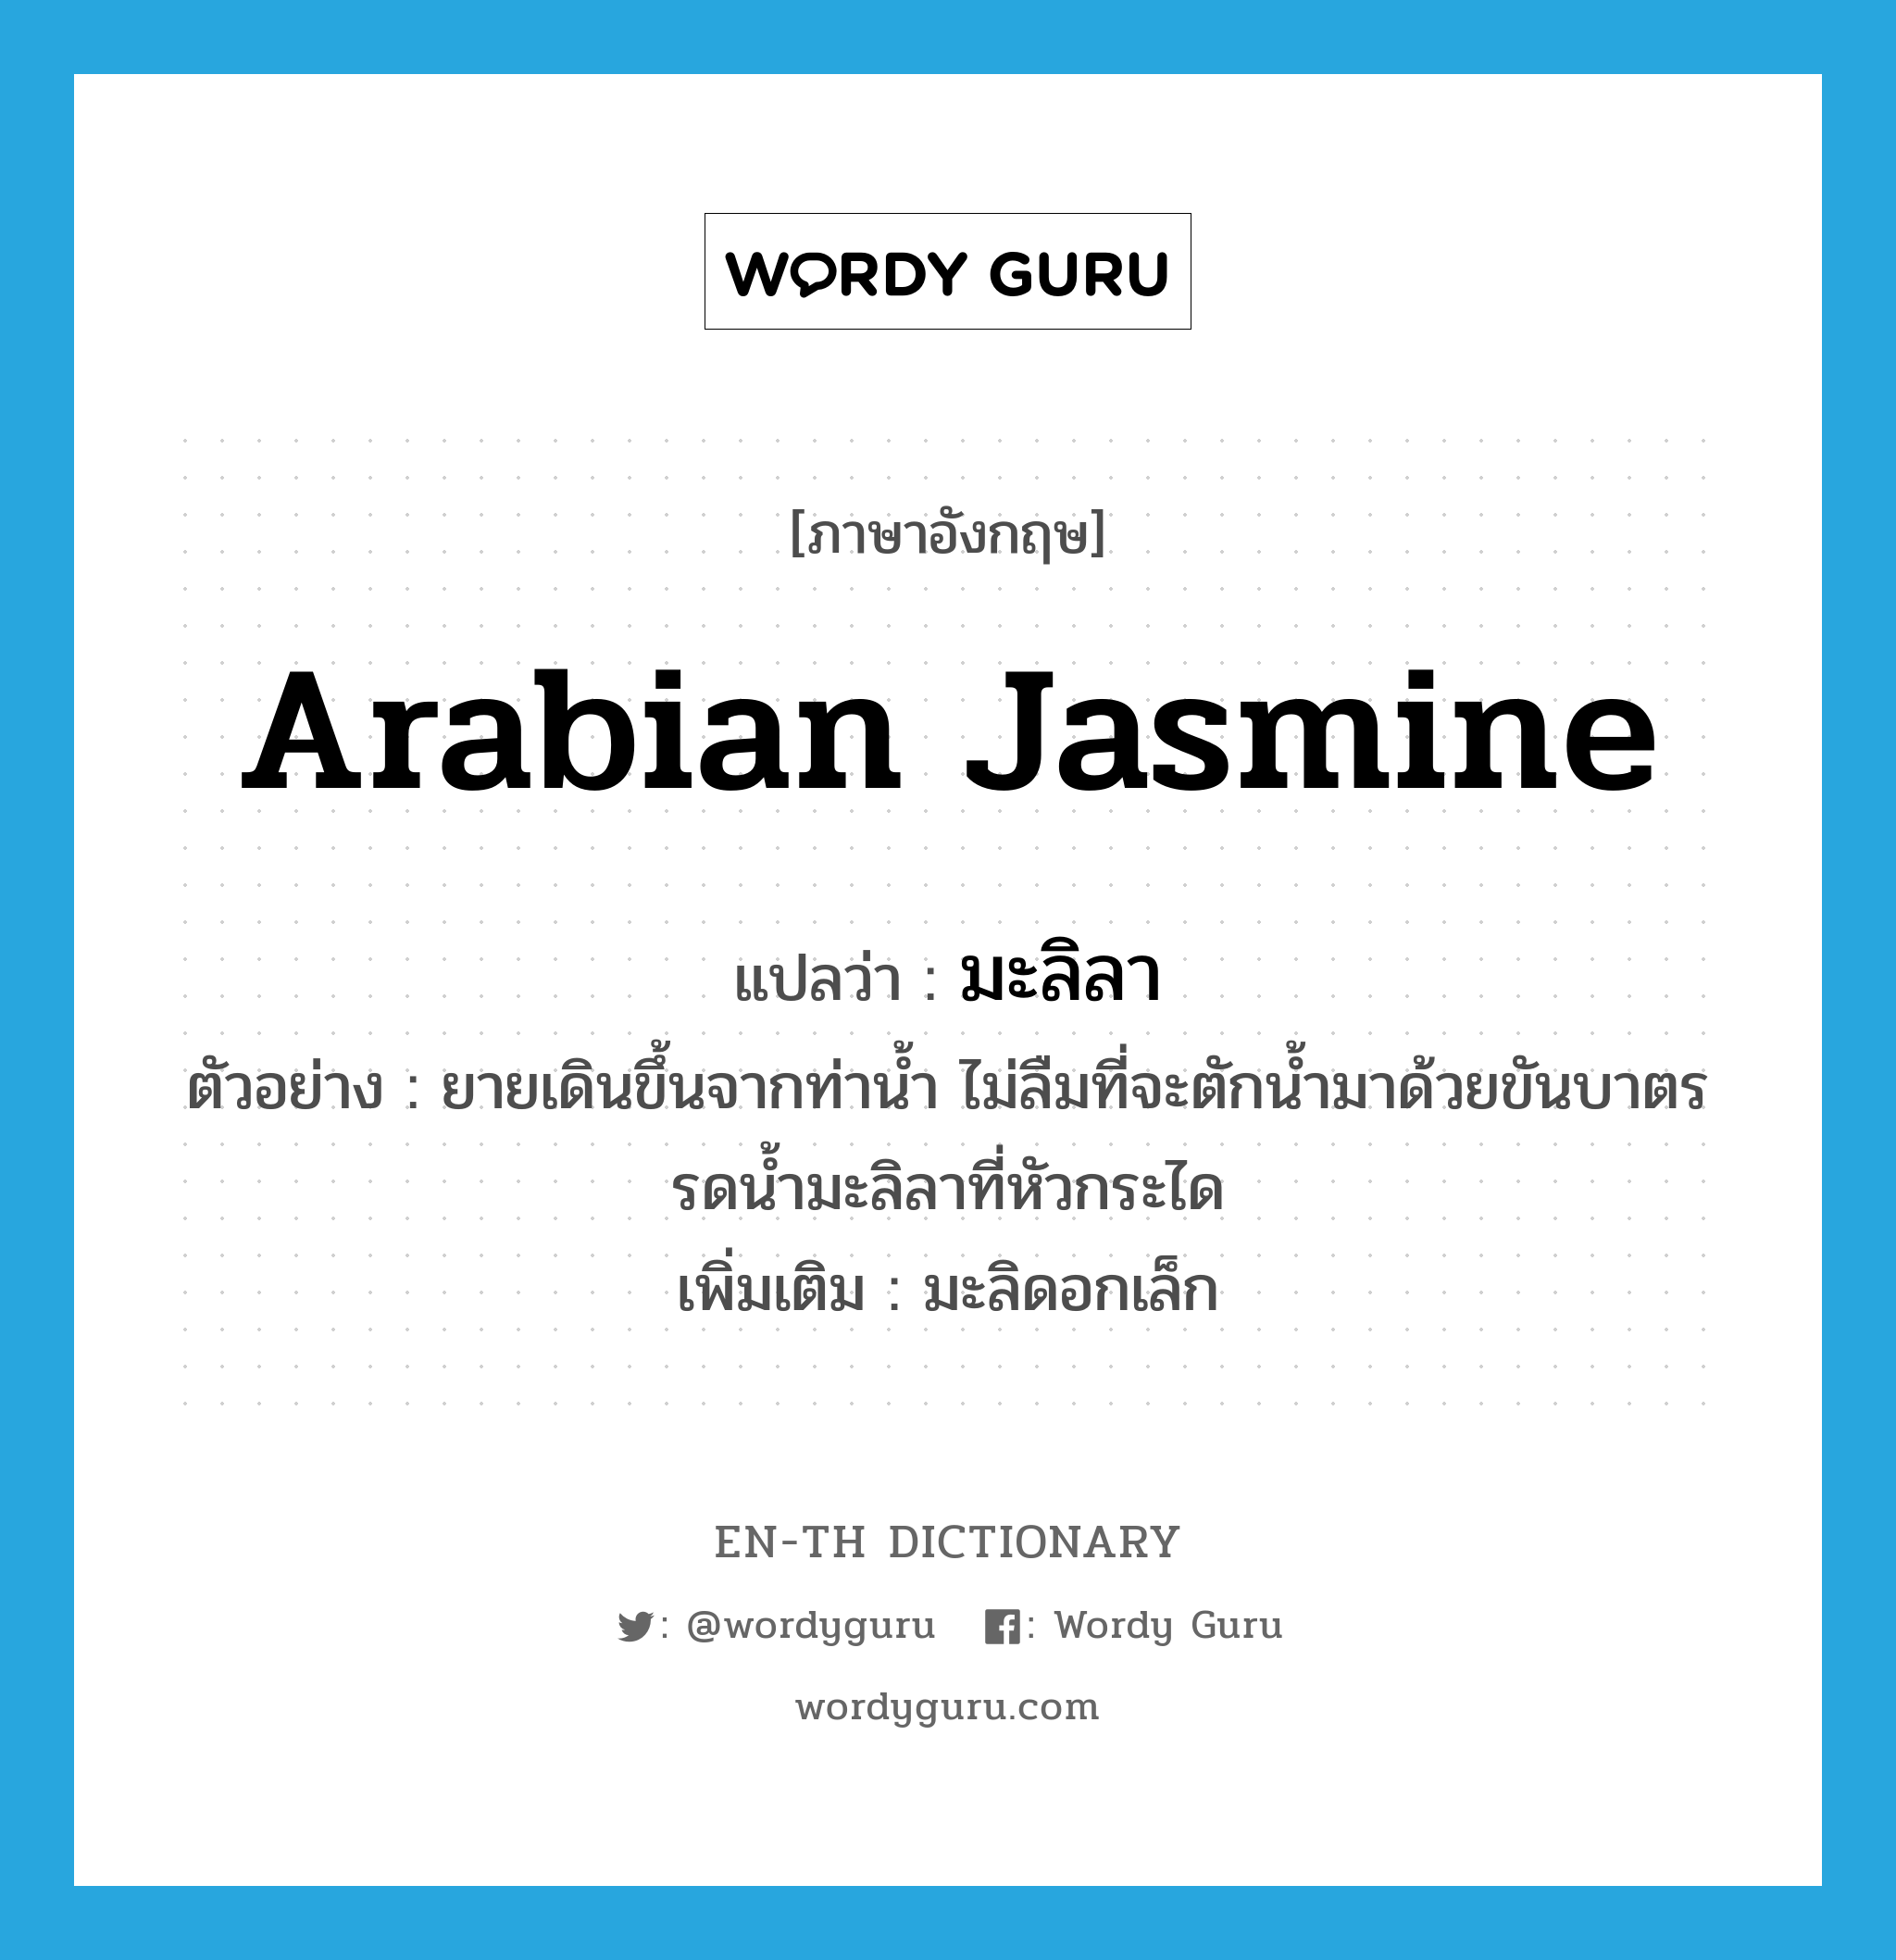 Arabian jasmine แปลว่า?, คำศัพท์ภาษาอังกฤษ Arabian jasmine แปลว่า มะลิลา ประเภท N ตัวอย่าง ยายเดินขึ้นจากท่าน้ำ ไม่ลืมที่จะตักน้ำมาด้วยขันบาตรรดน้ำมะลิลาที่หัวกระได เพิ่มเติม มะลิดอกเล็ก หมวด N